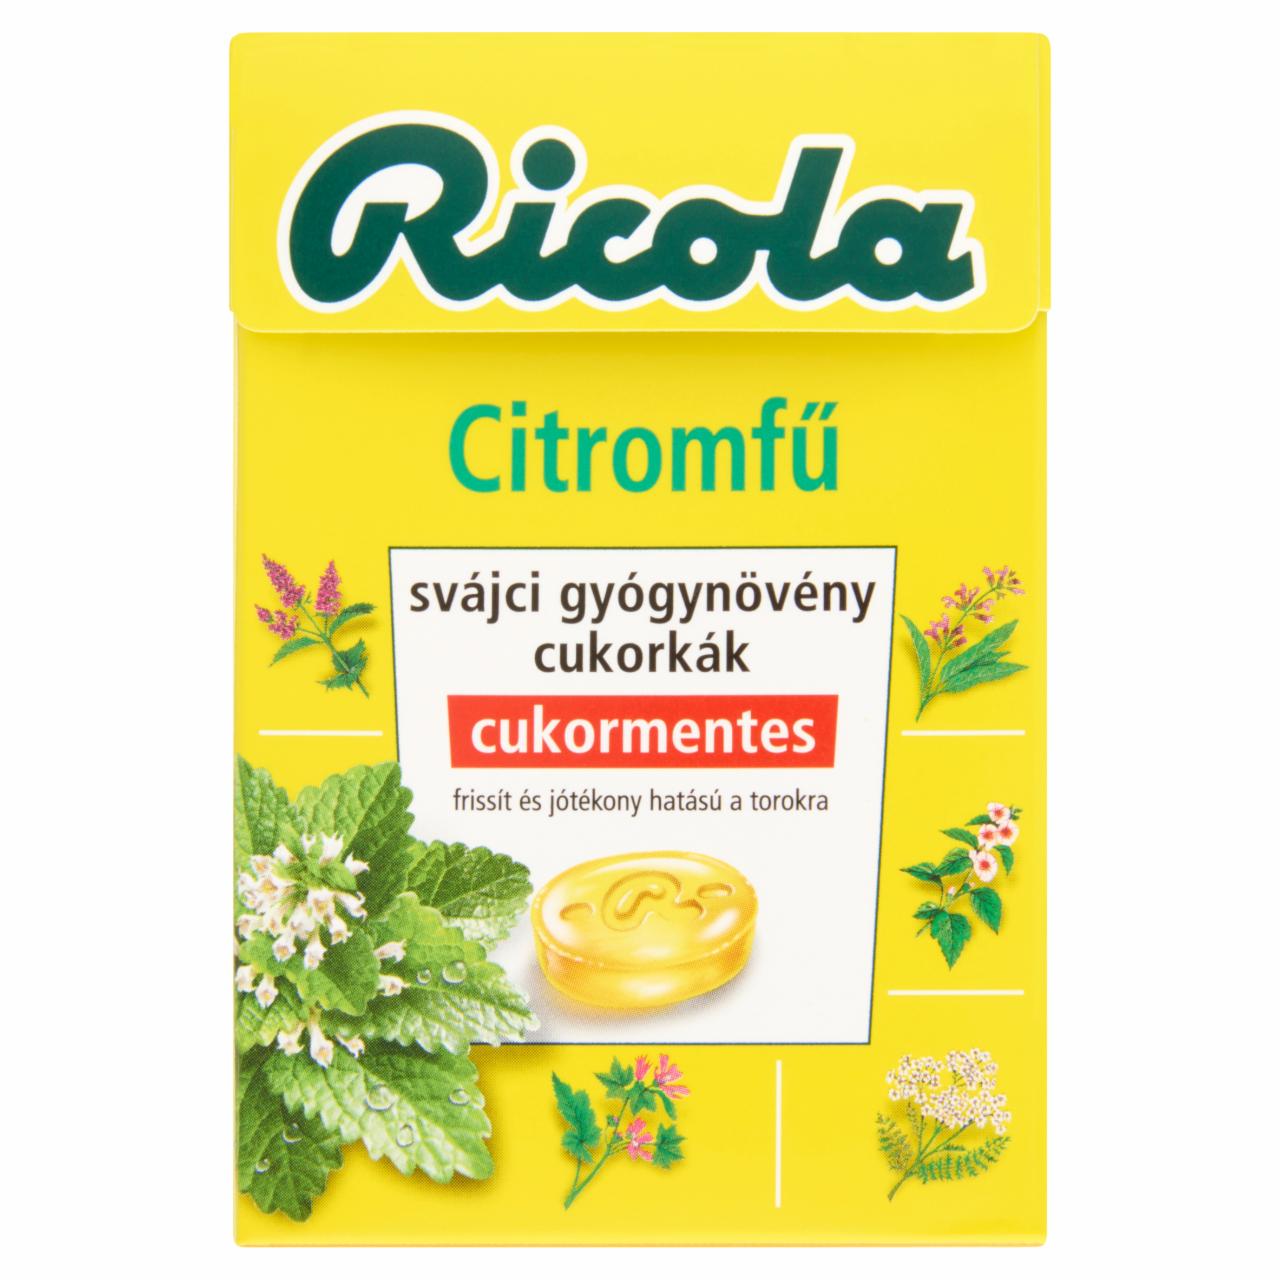 Képek - Ricola Citromfű cukormentes svájci gyógynövény cukorkák édesítőszerekkel 40 g